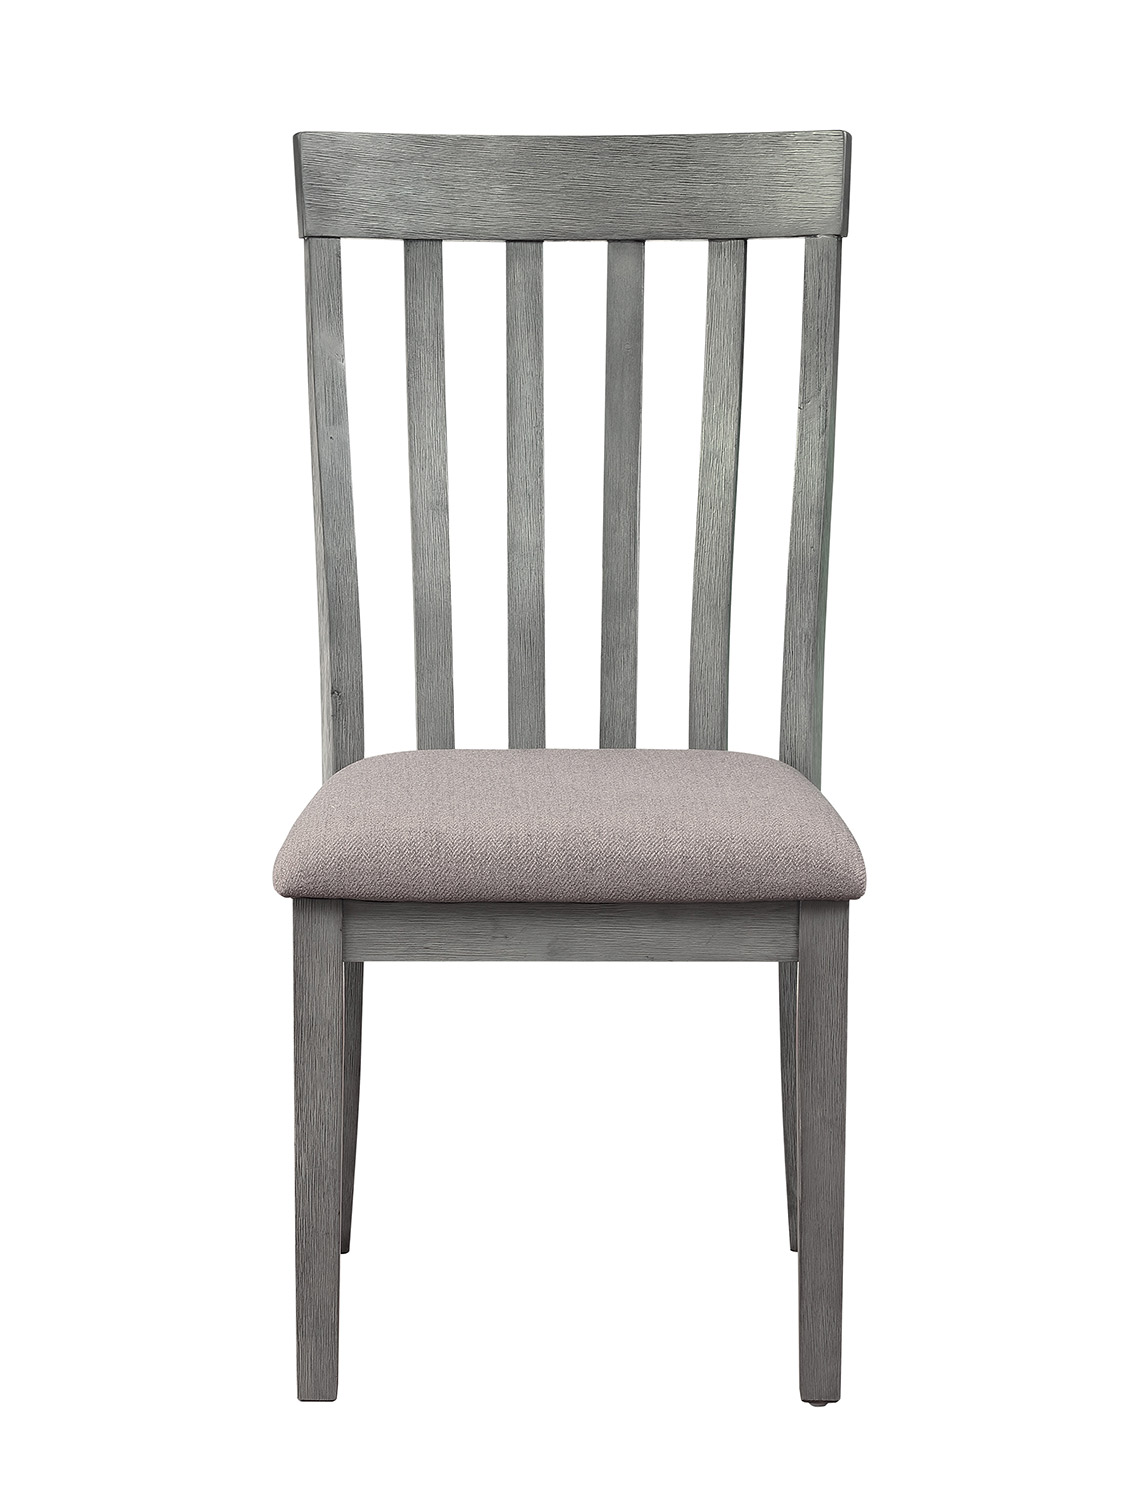 Homelegance Armhurst Side Chair - Gray